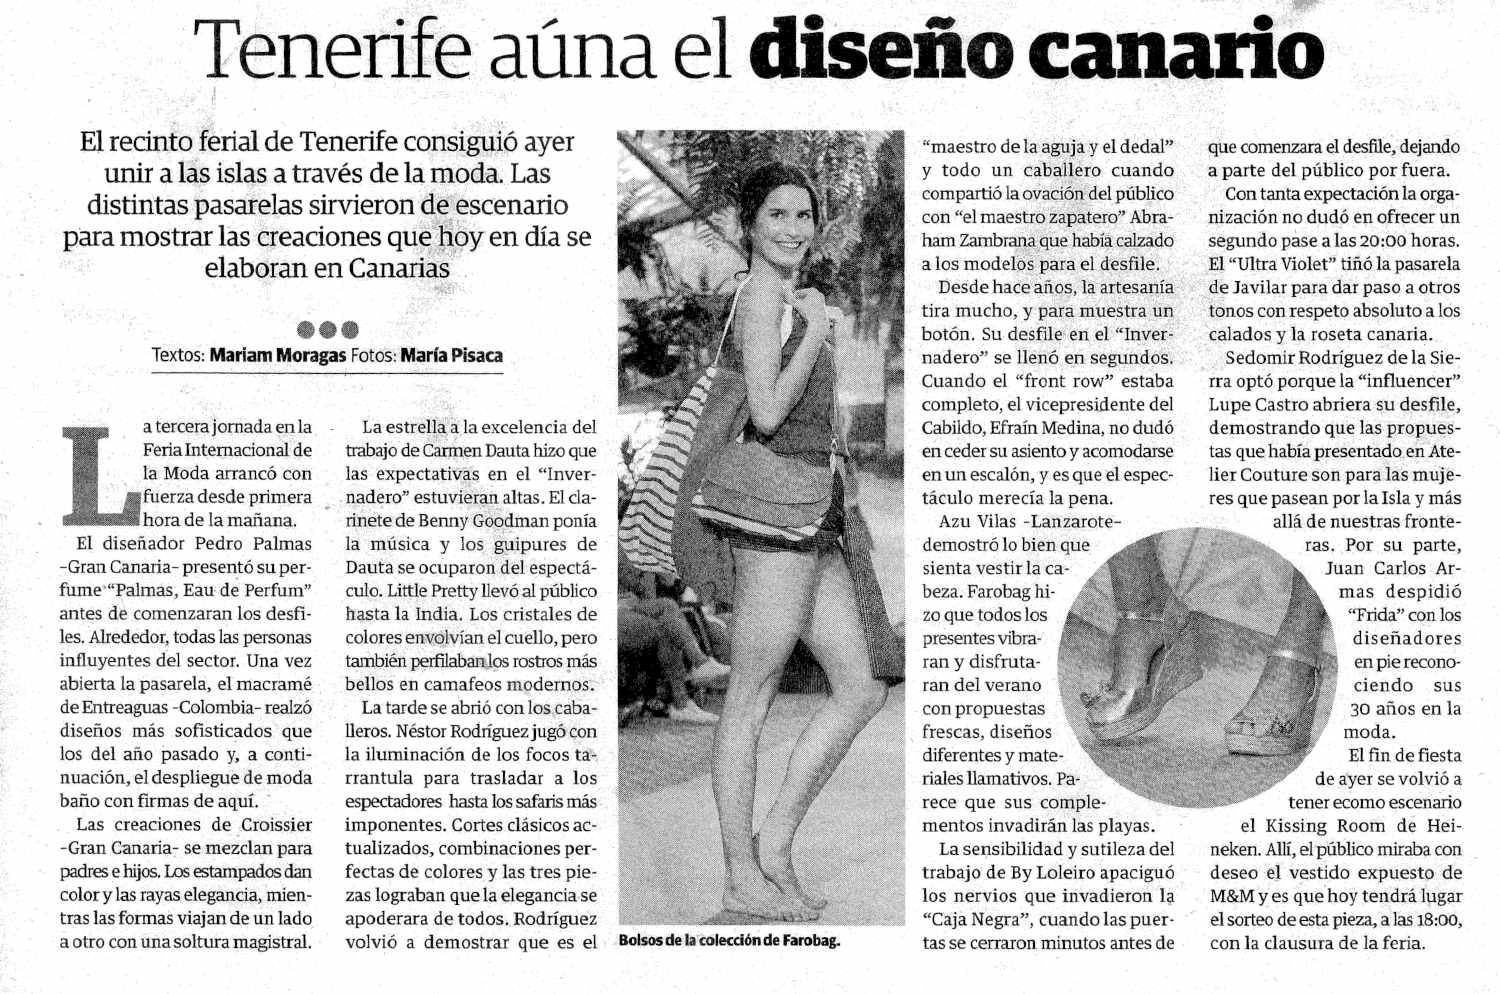 Artículo de prensa en el periódico El Día sobre la Feria Internacional de la Moda de Tenerife en Abril 2018 que habla sobre los bolosos de tela de Farobag